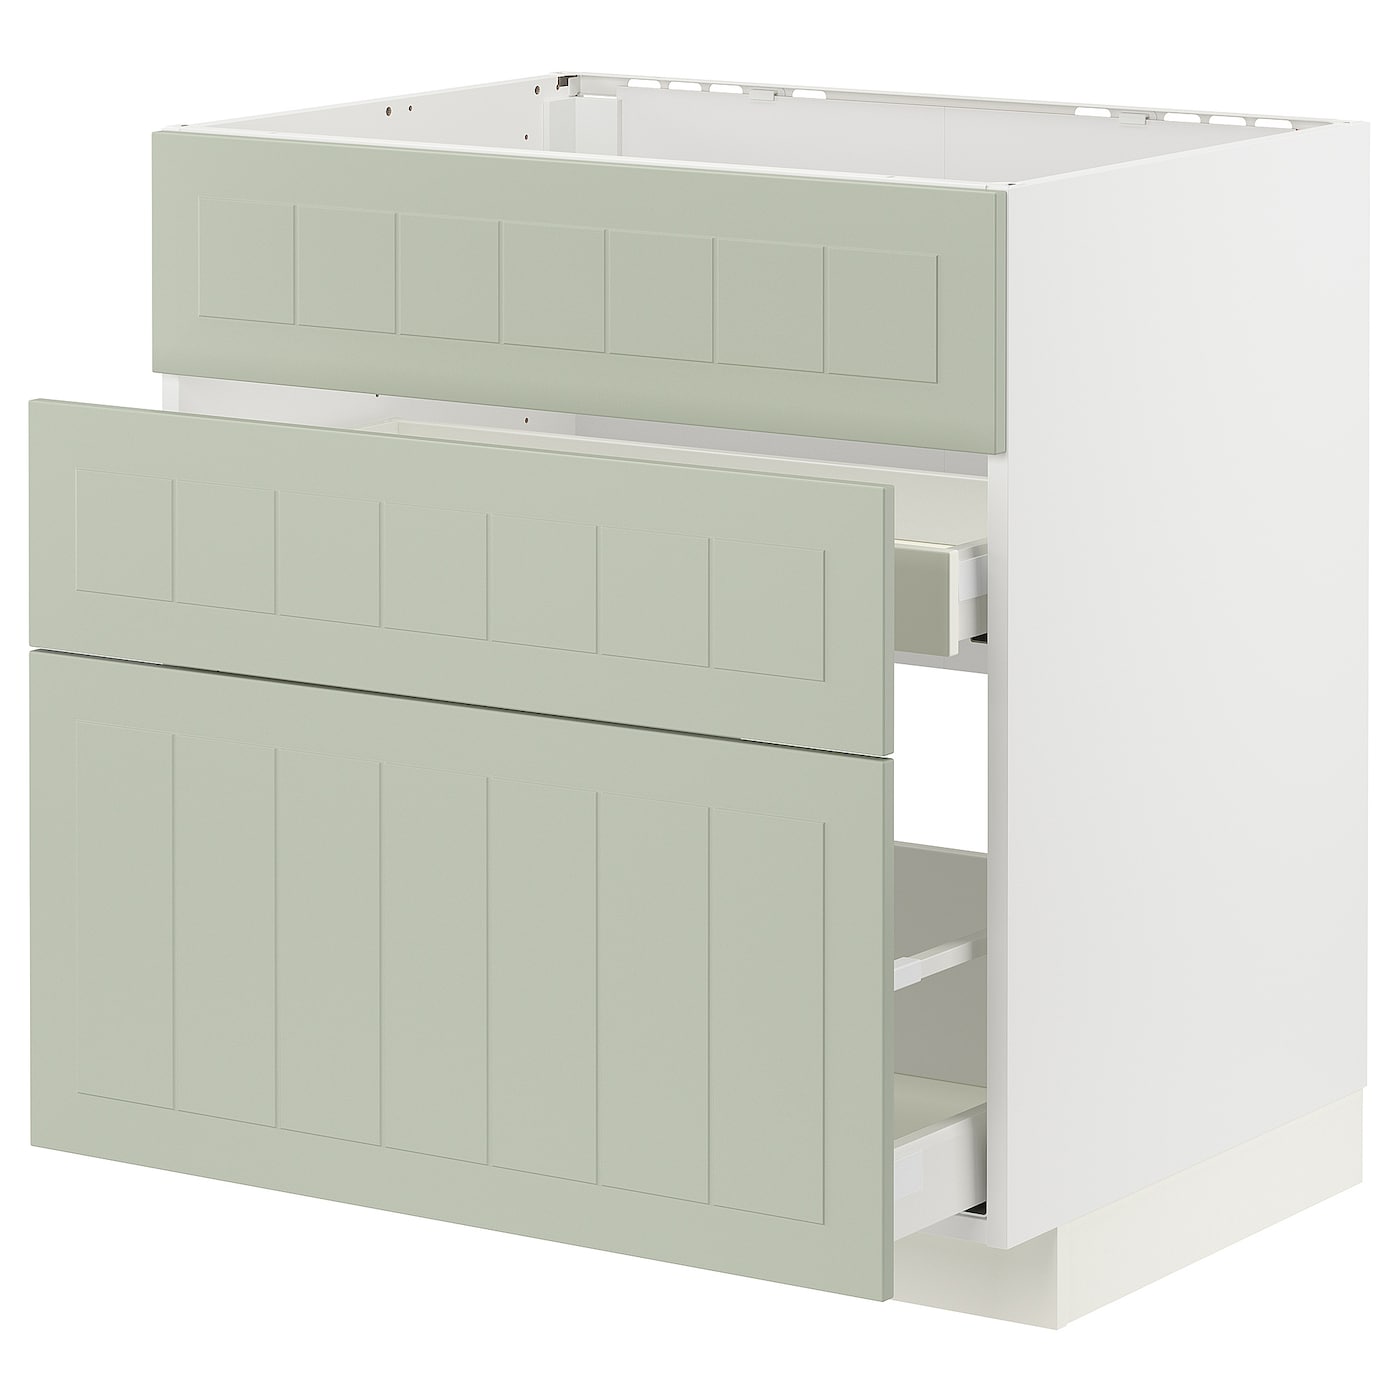 Напольный кухонный шкаф  - IKEA METOD MAXIMERA, 88x61,9x80см, белый/светло-серый, МЕТОД МАКСИМЕРА ИКЕА